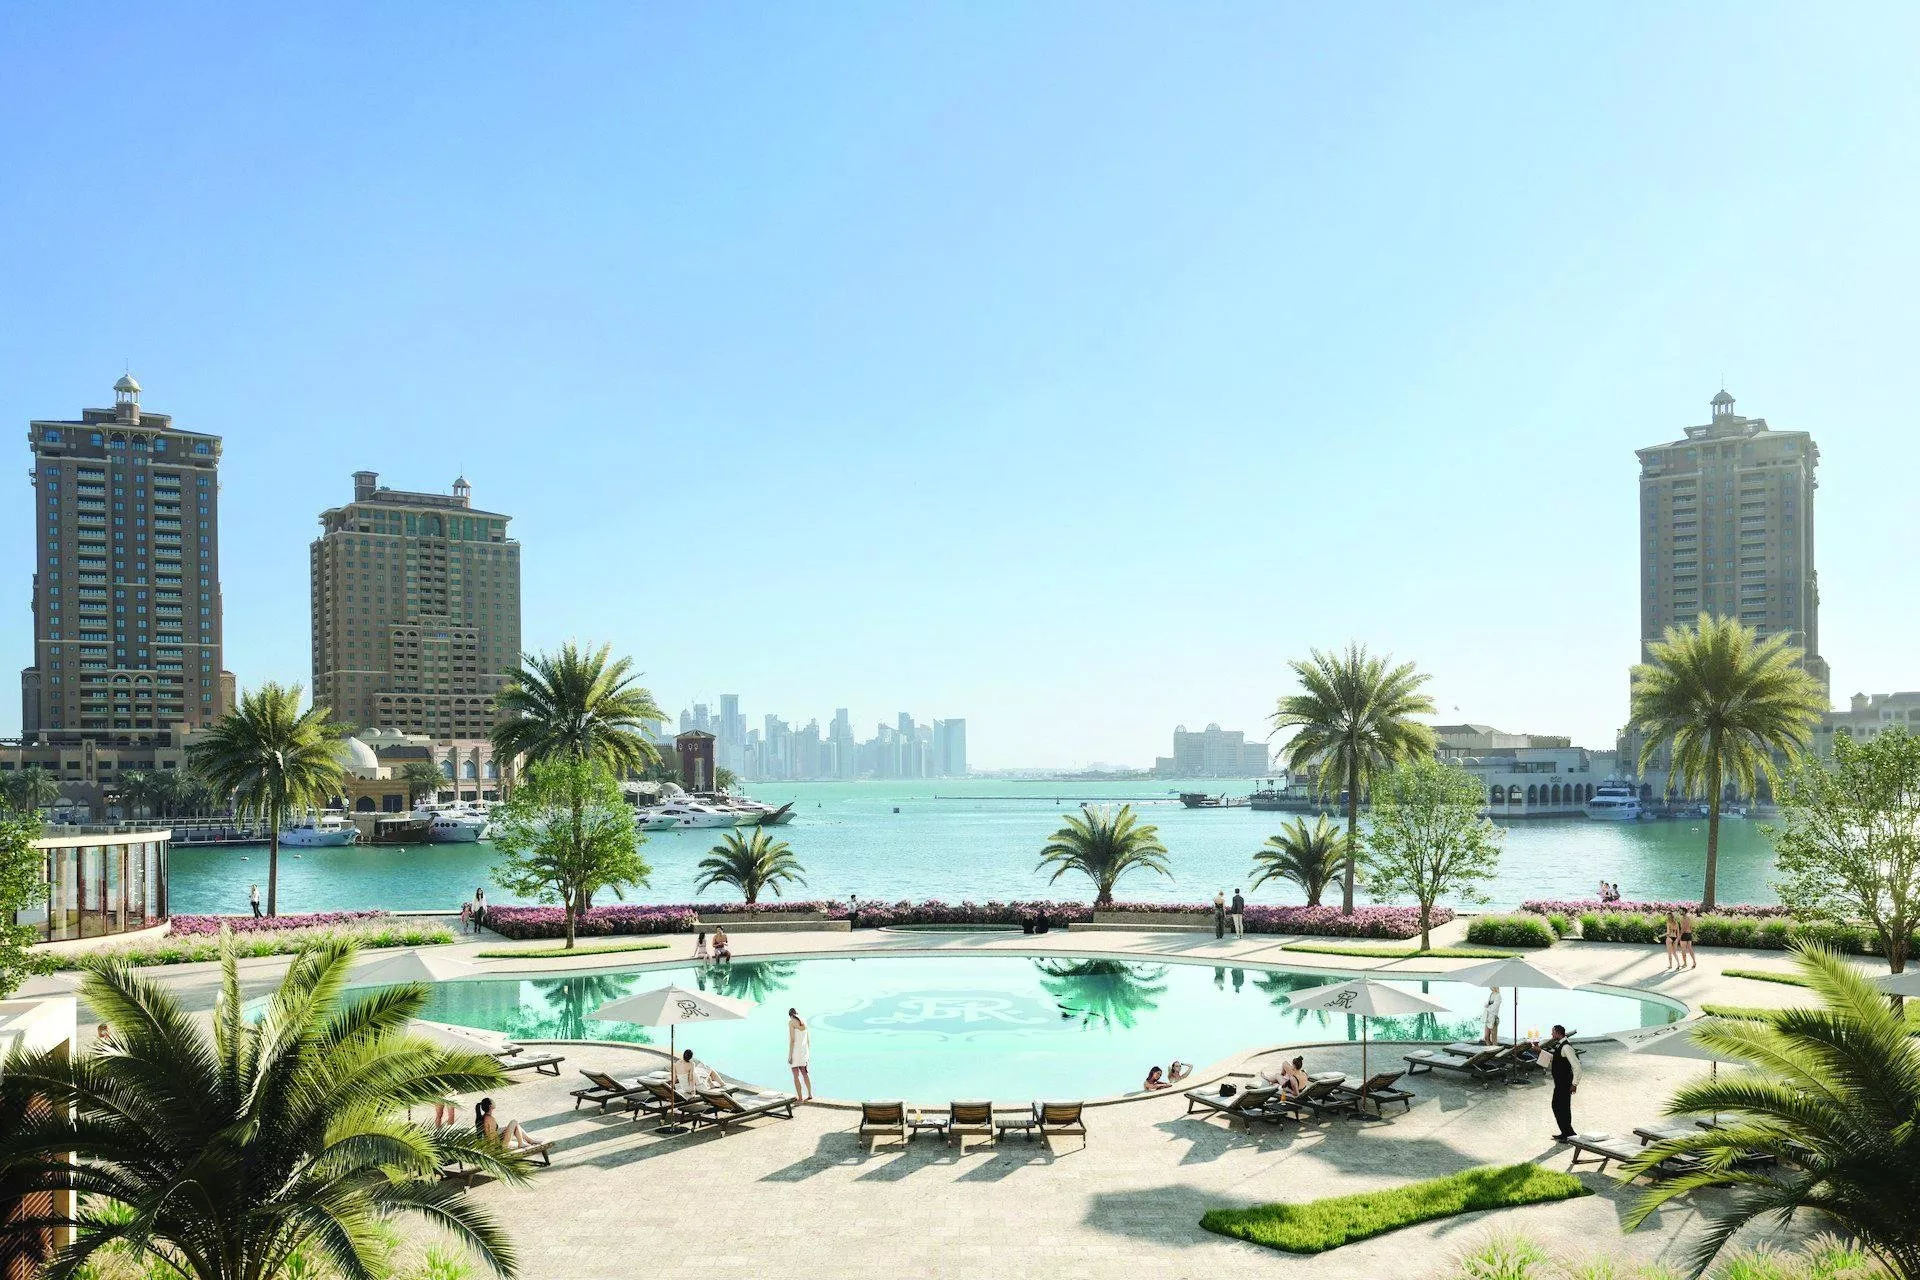 الفندق العالمي المفضّل لديكِ أصبح قريب منكِ! مطاعم وفنادق عالمية فتحت أبوابها في الخليج